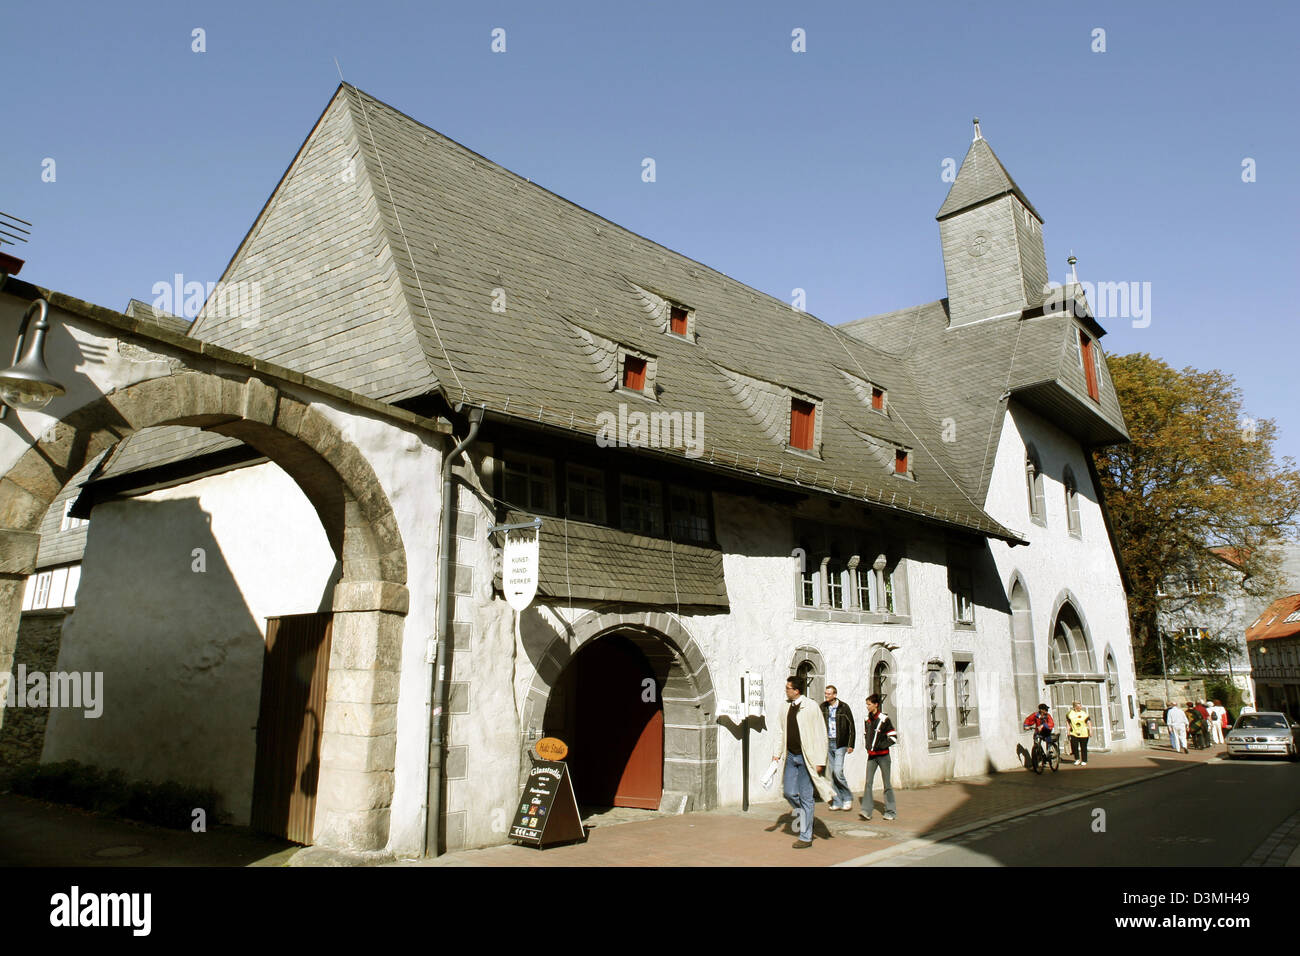 (Dpa) file visitatori passeggiata attraverso le strade medioevali di Goslar, Repubblica federale di Germania, 22 settembre 2005. Foto: Robert Fishman Foto Stock